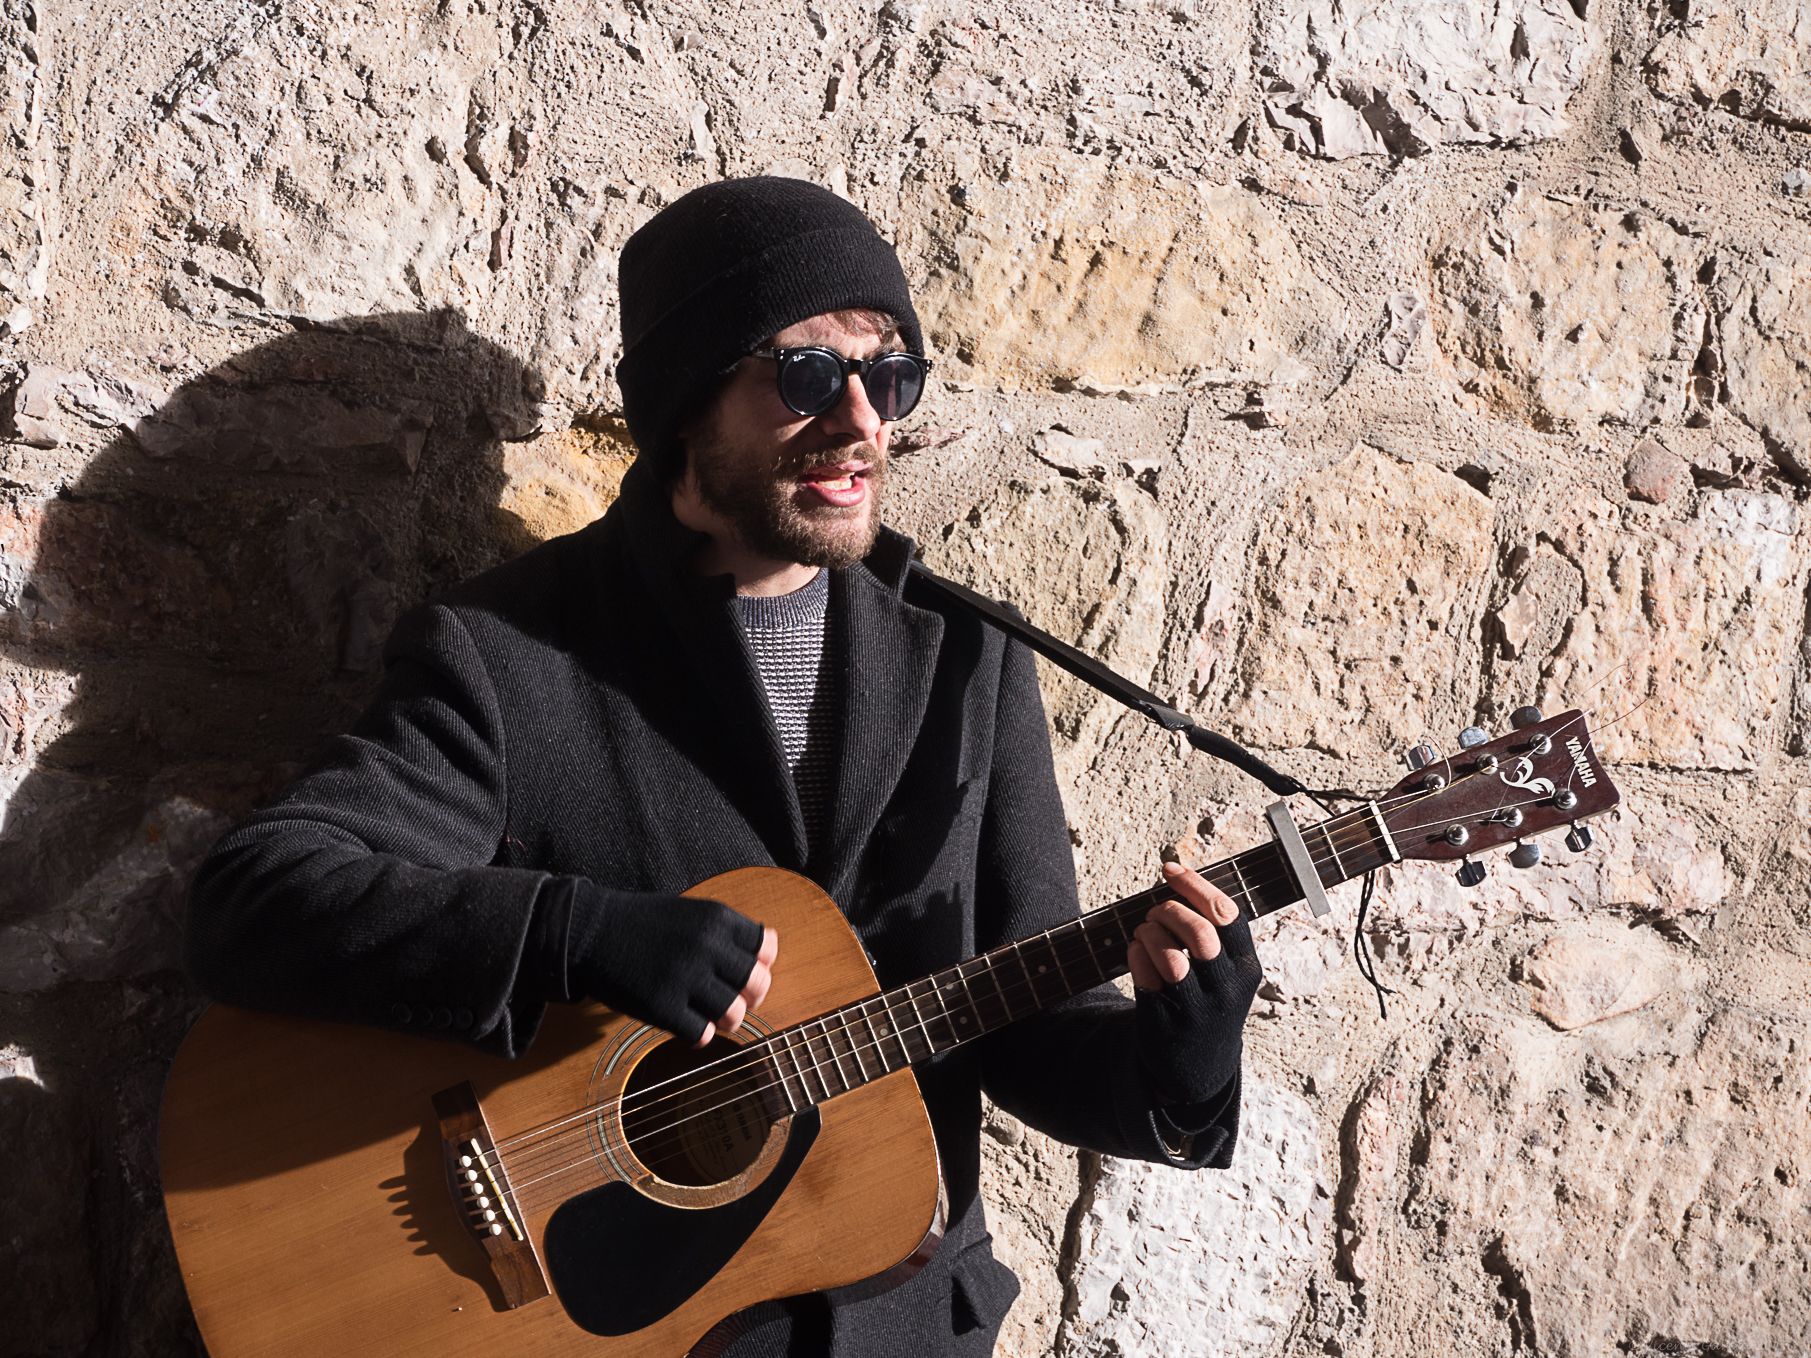 Guitarra, gafas y gorro para aliviar el frío componen el atuendo del artista leonés en una de sus jornadas tocando en la calle. | VICENTE GARCÍA